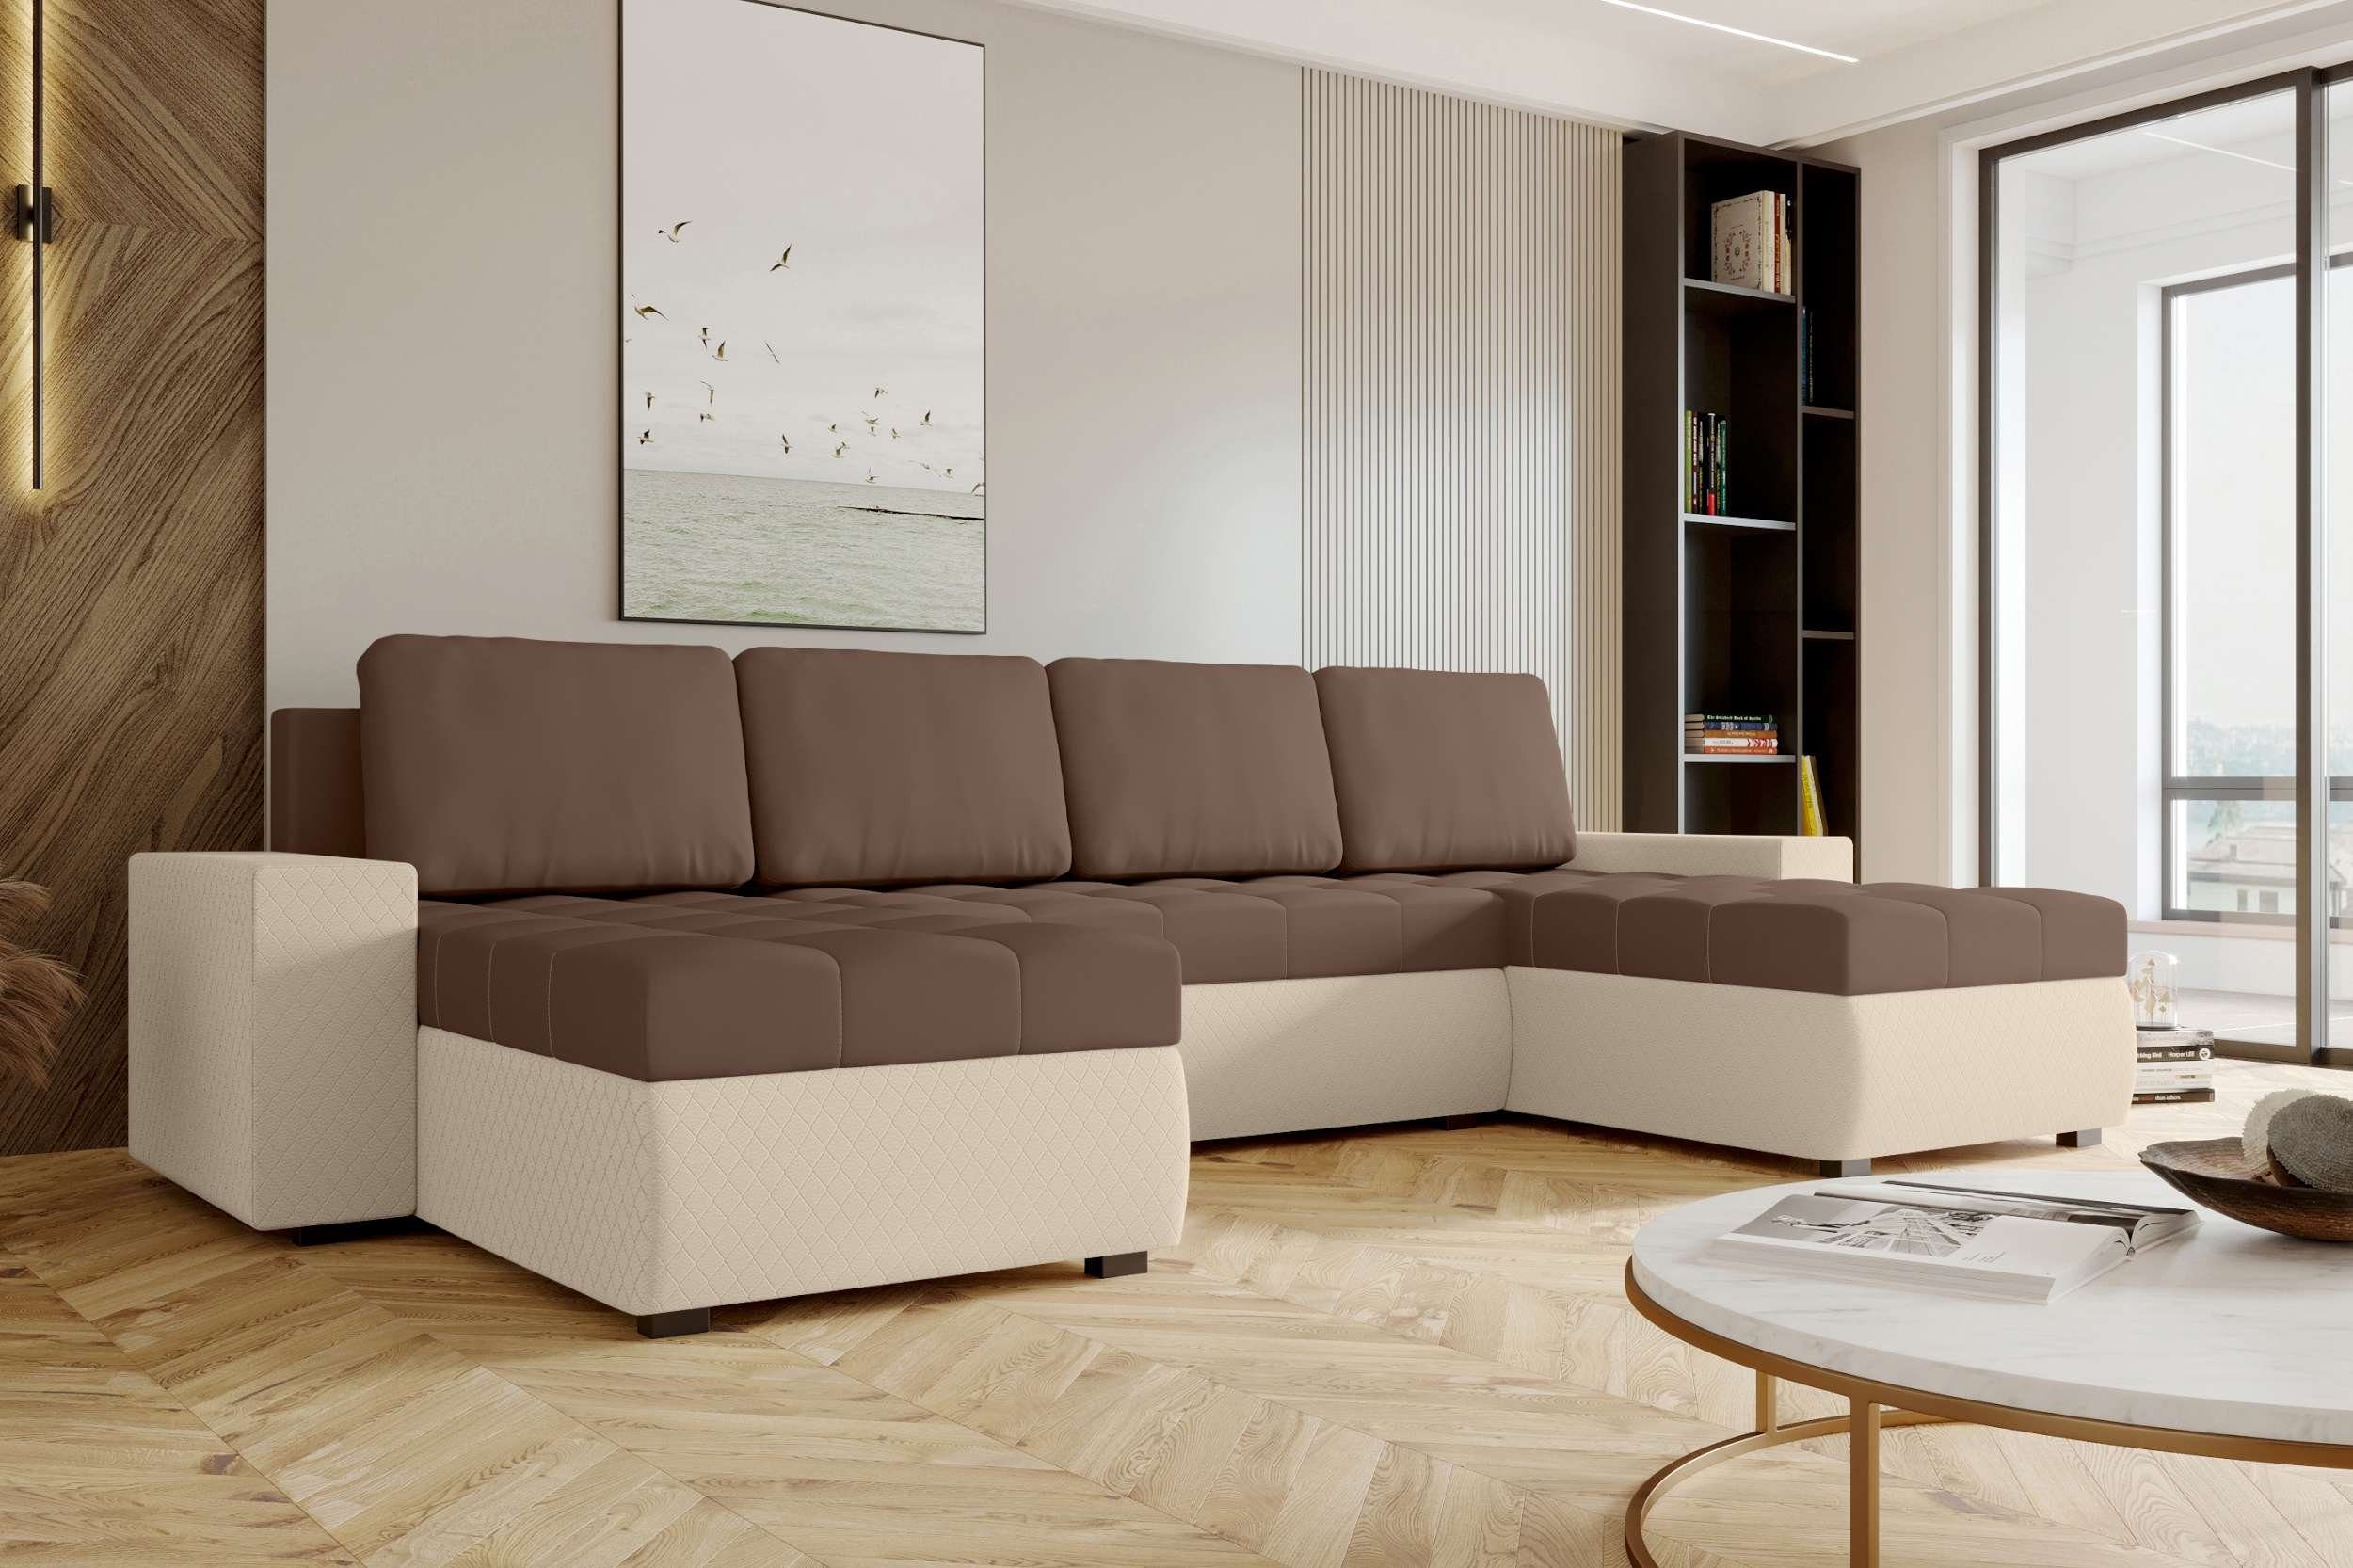 Modern mit Sitzkomfort, Eckcouch, Bettfunktion, U-Form, Wohnlandschaft Stylefy Amelia, Sofa, Bettkasten, Design mit